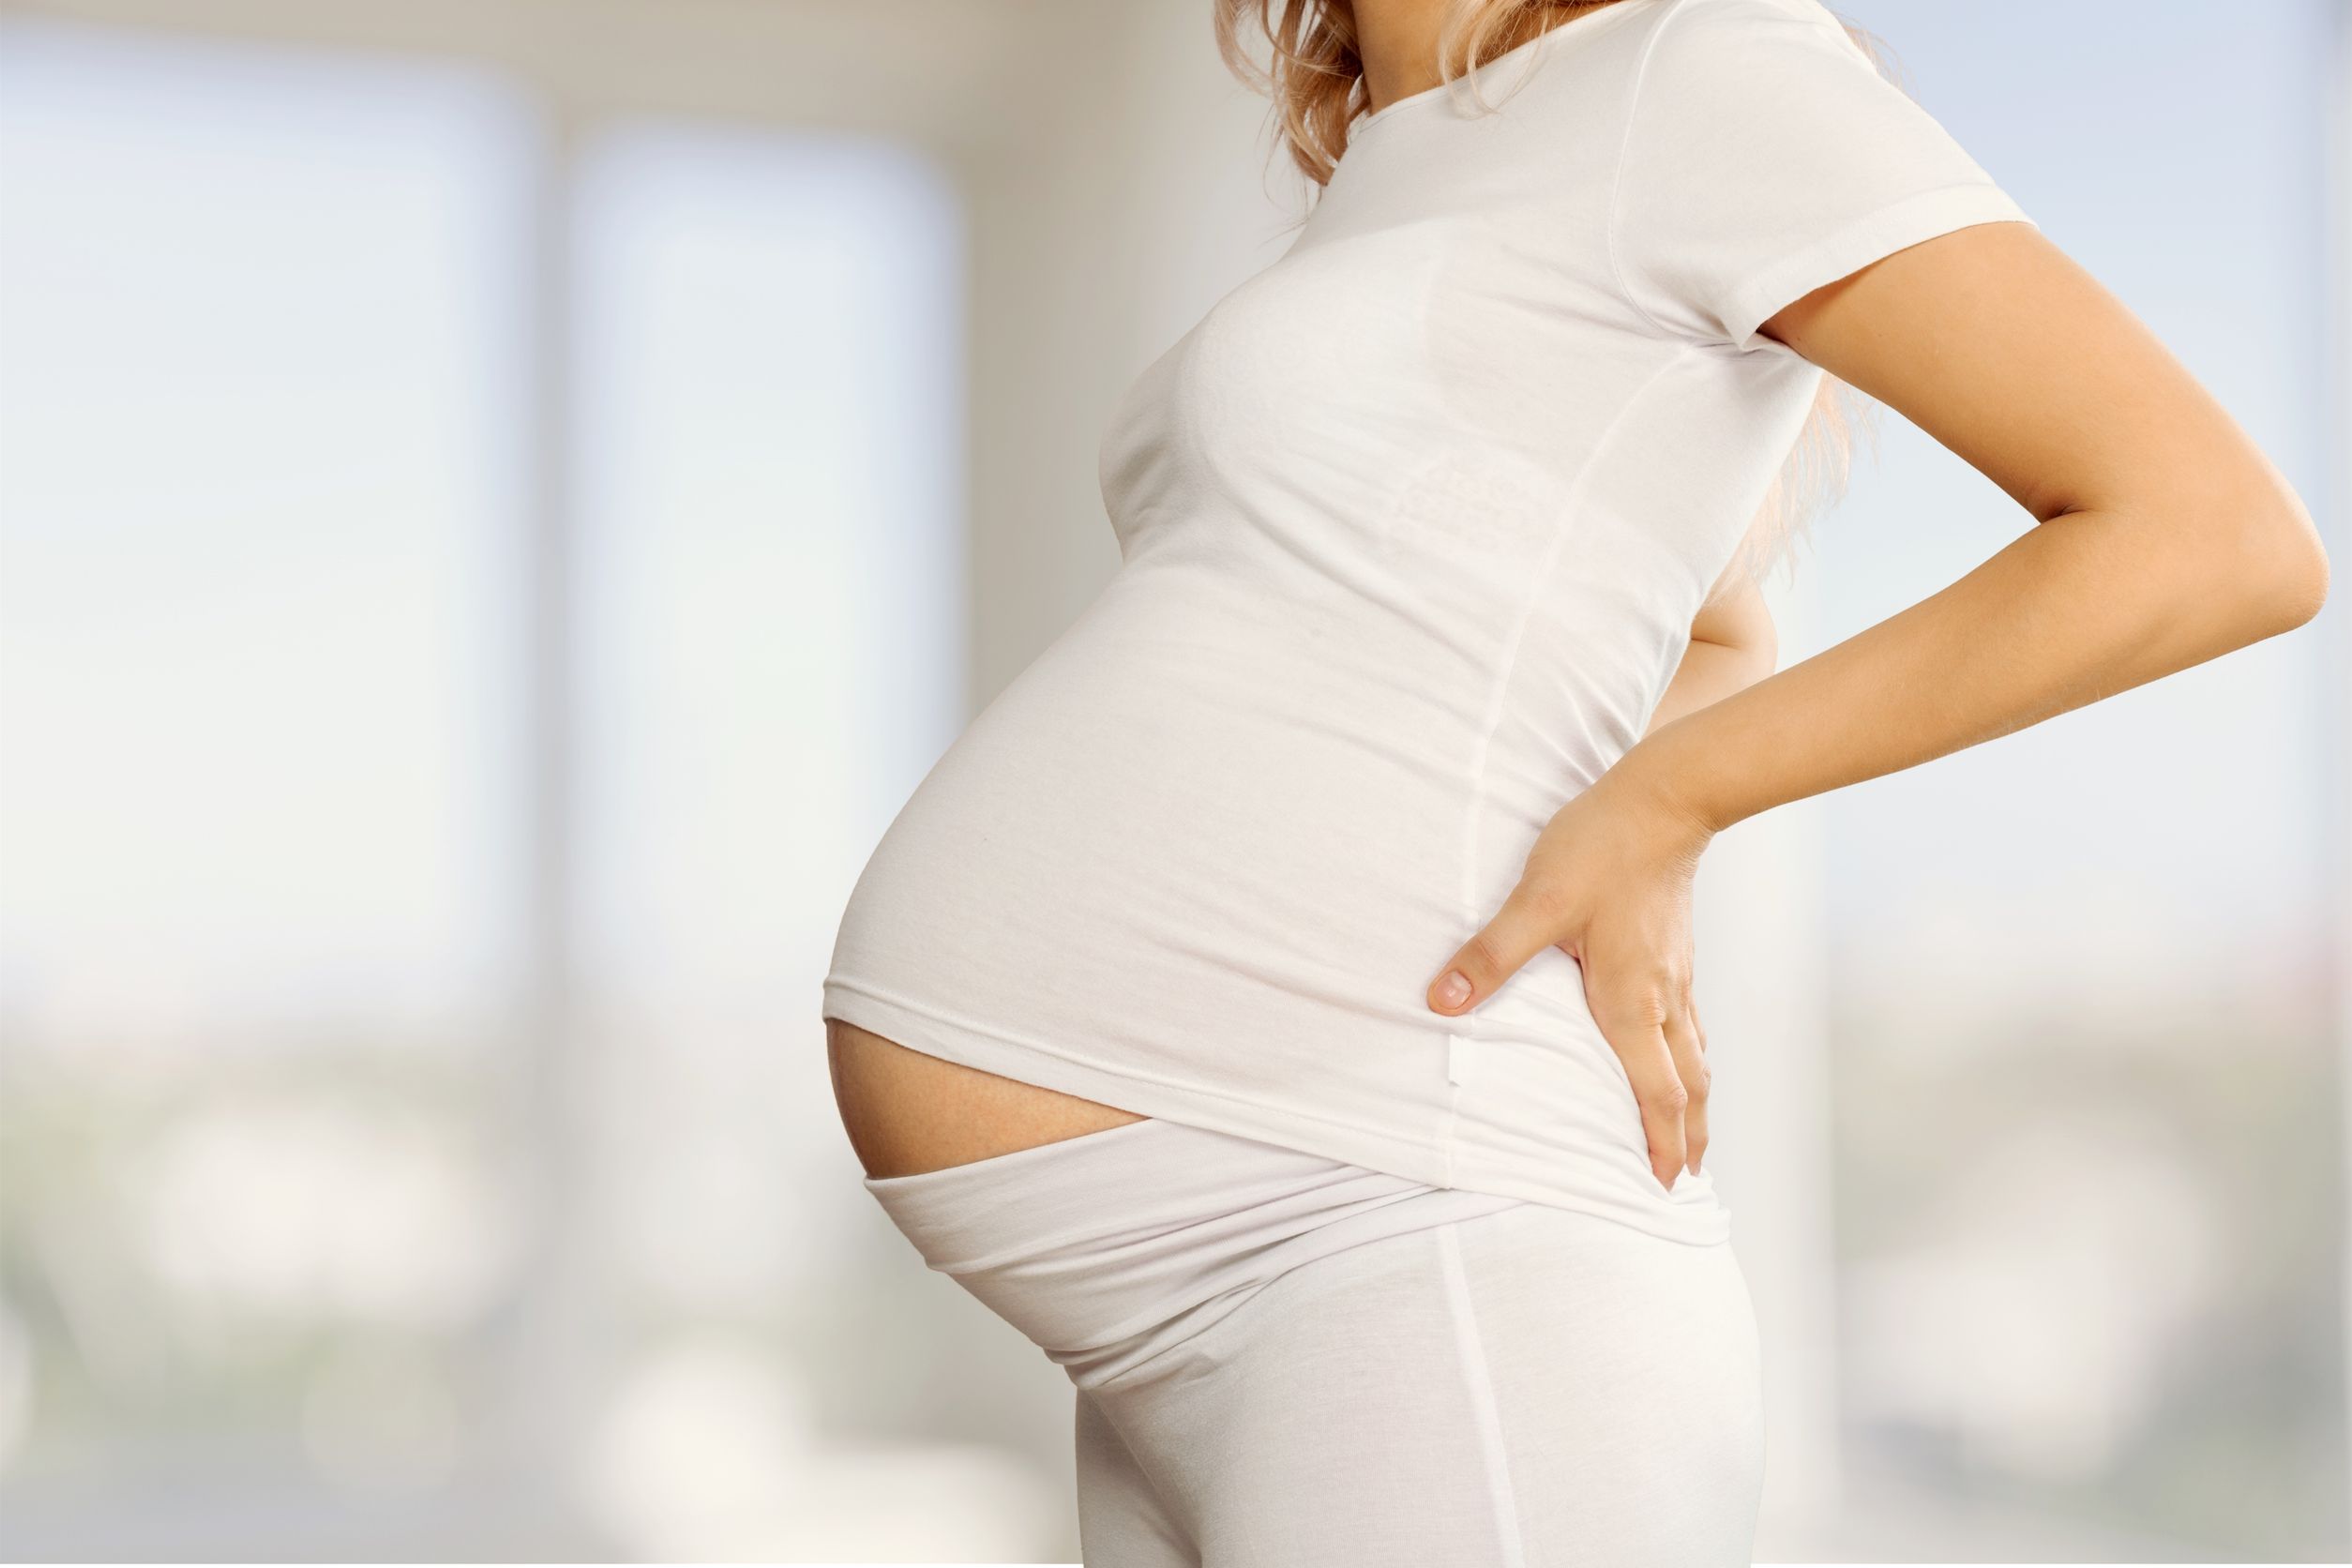 Подборка с беременными. Беременной женщины в белой одежде. Фото беременности.